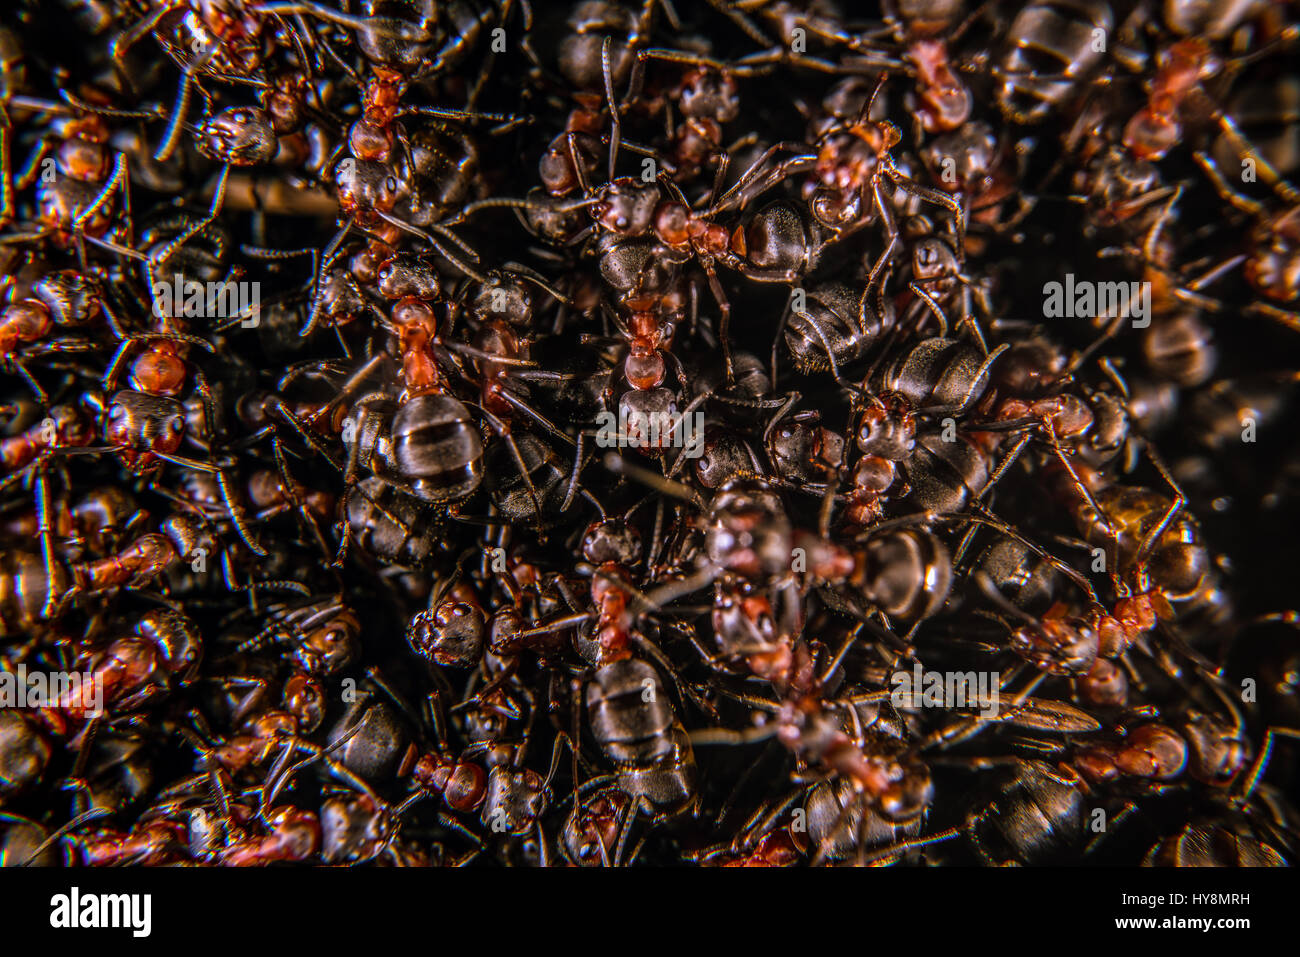 Les fourmis des bois rouge sur une fourmilière, close-up Banque D'Images